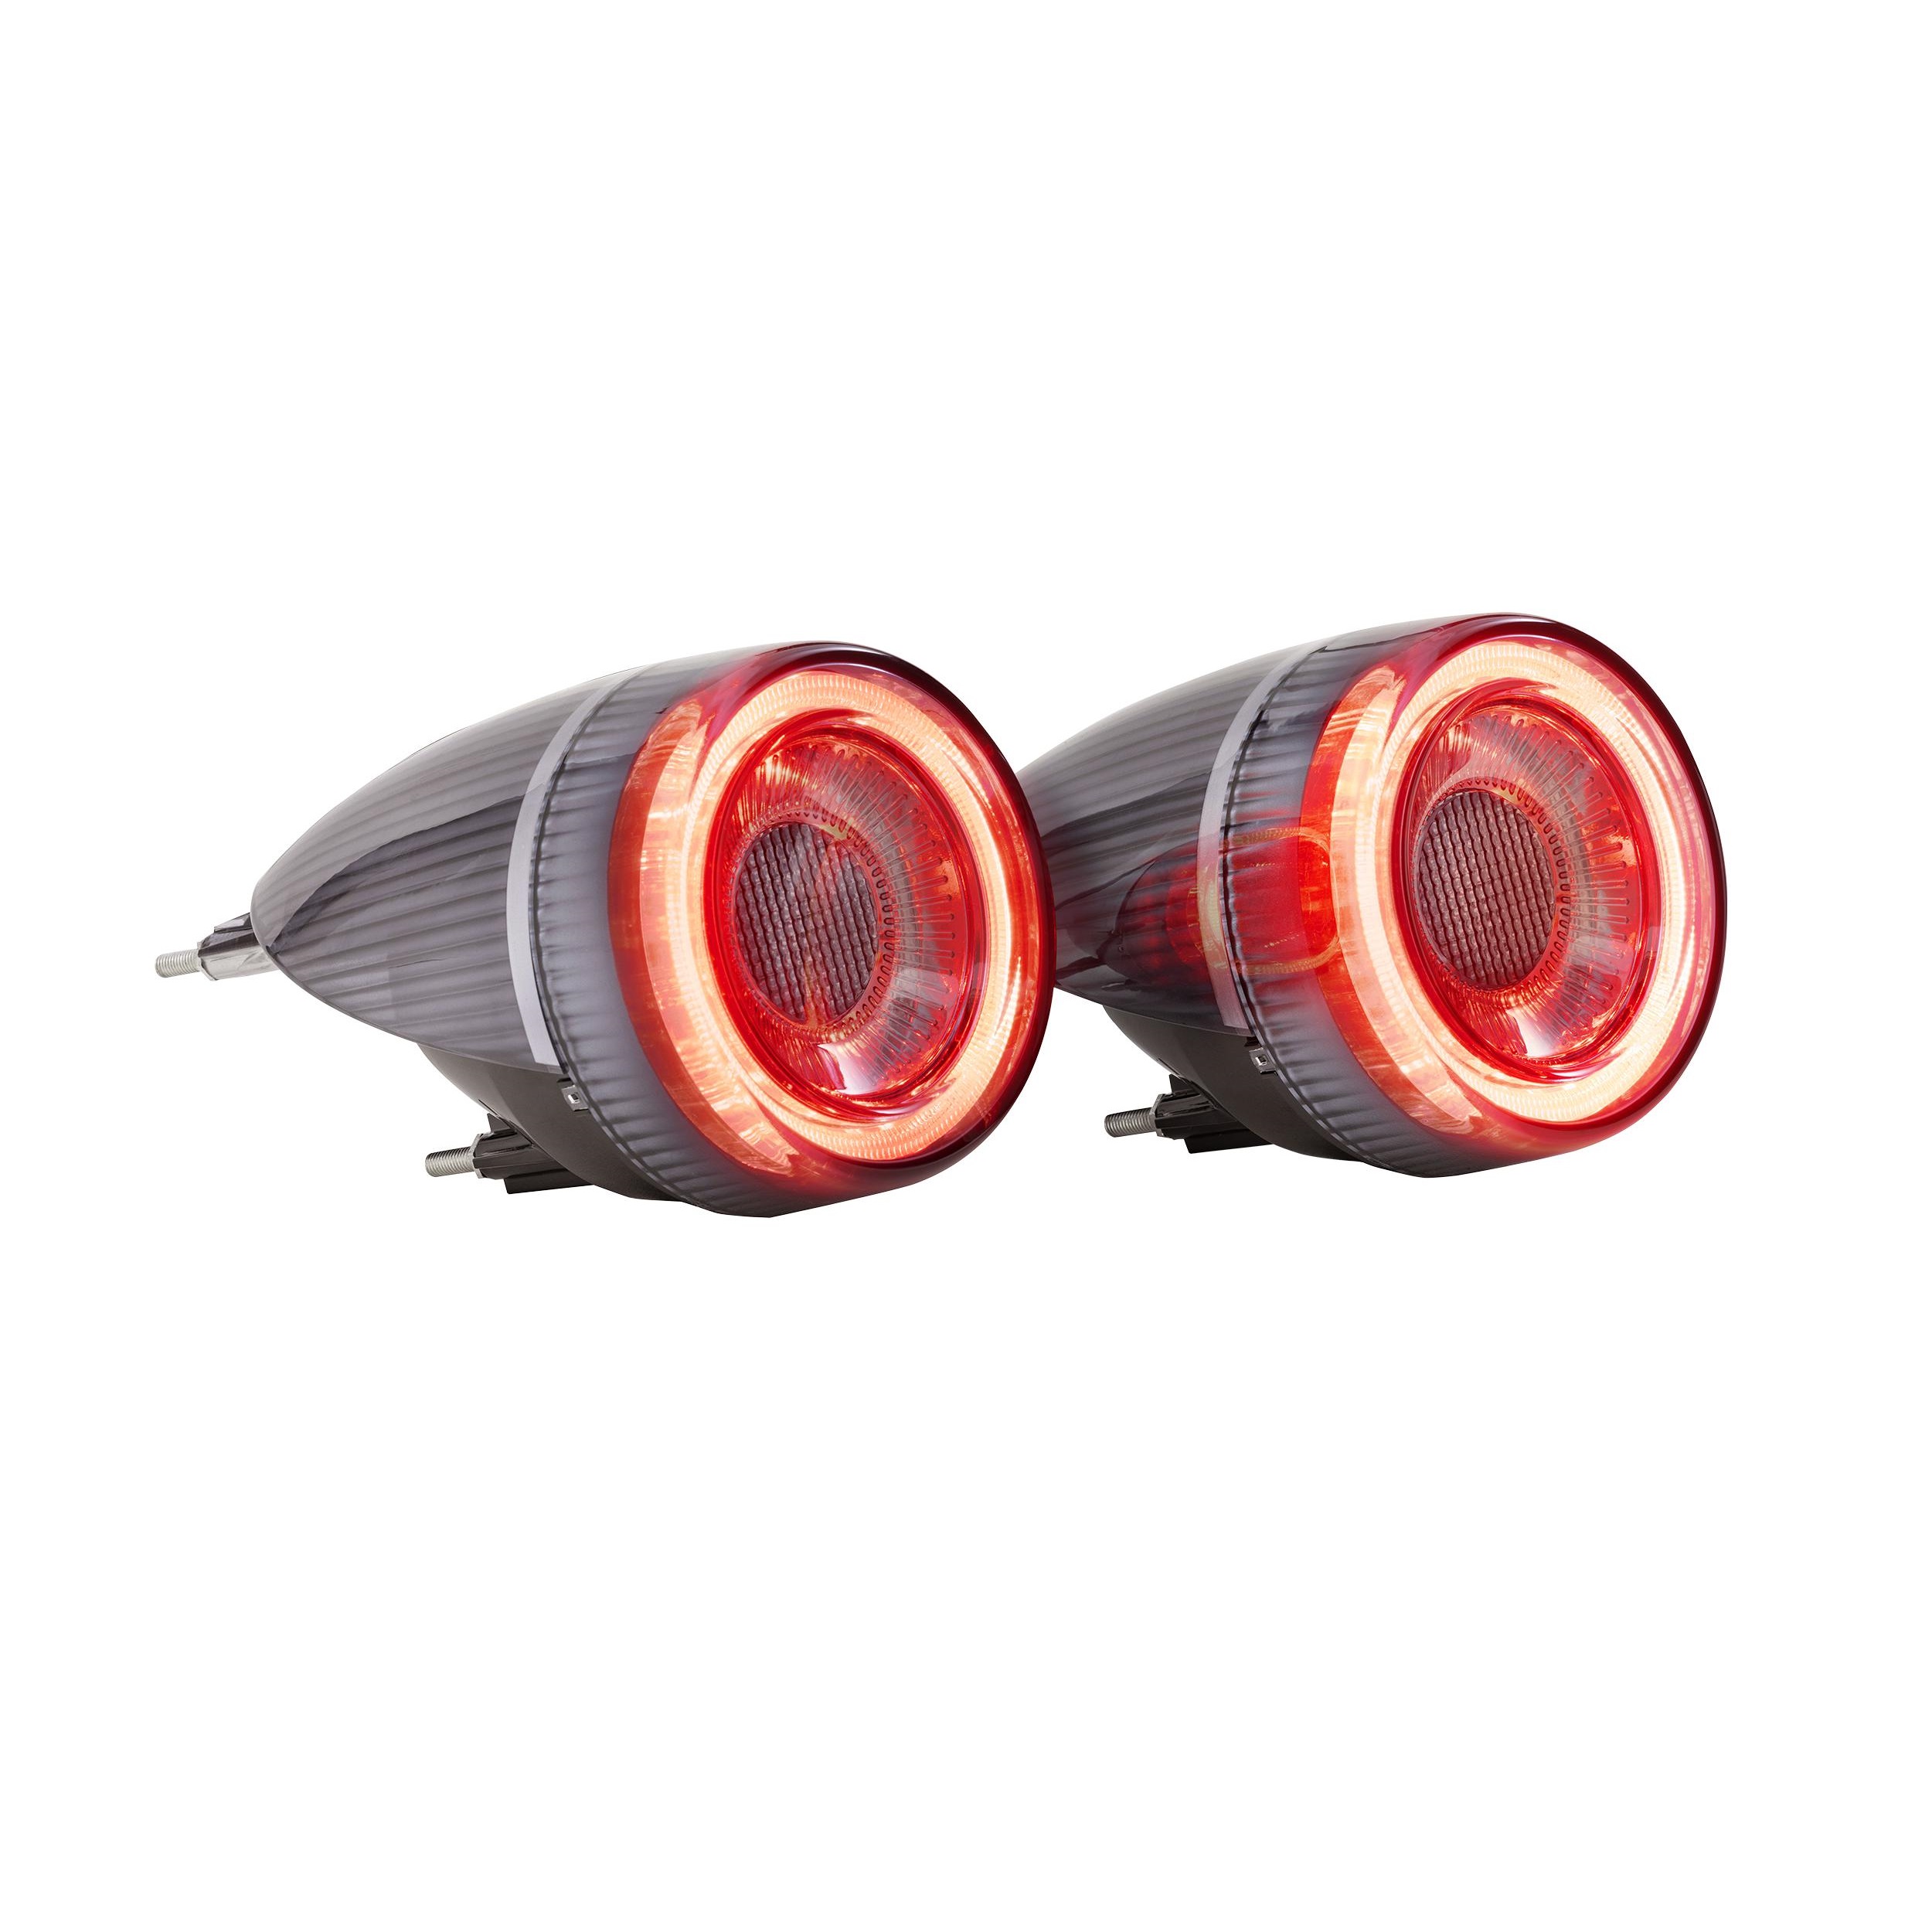 LED テールライト テールランプ フェラーリ F430 04-09 スモーク 